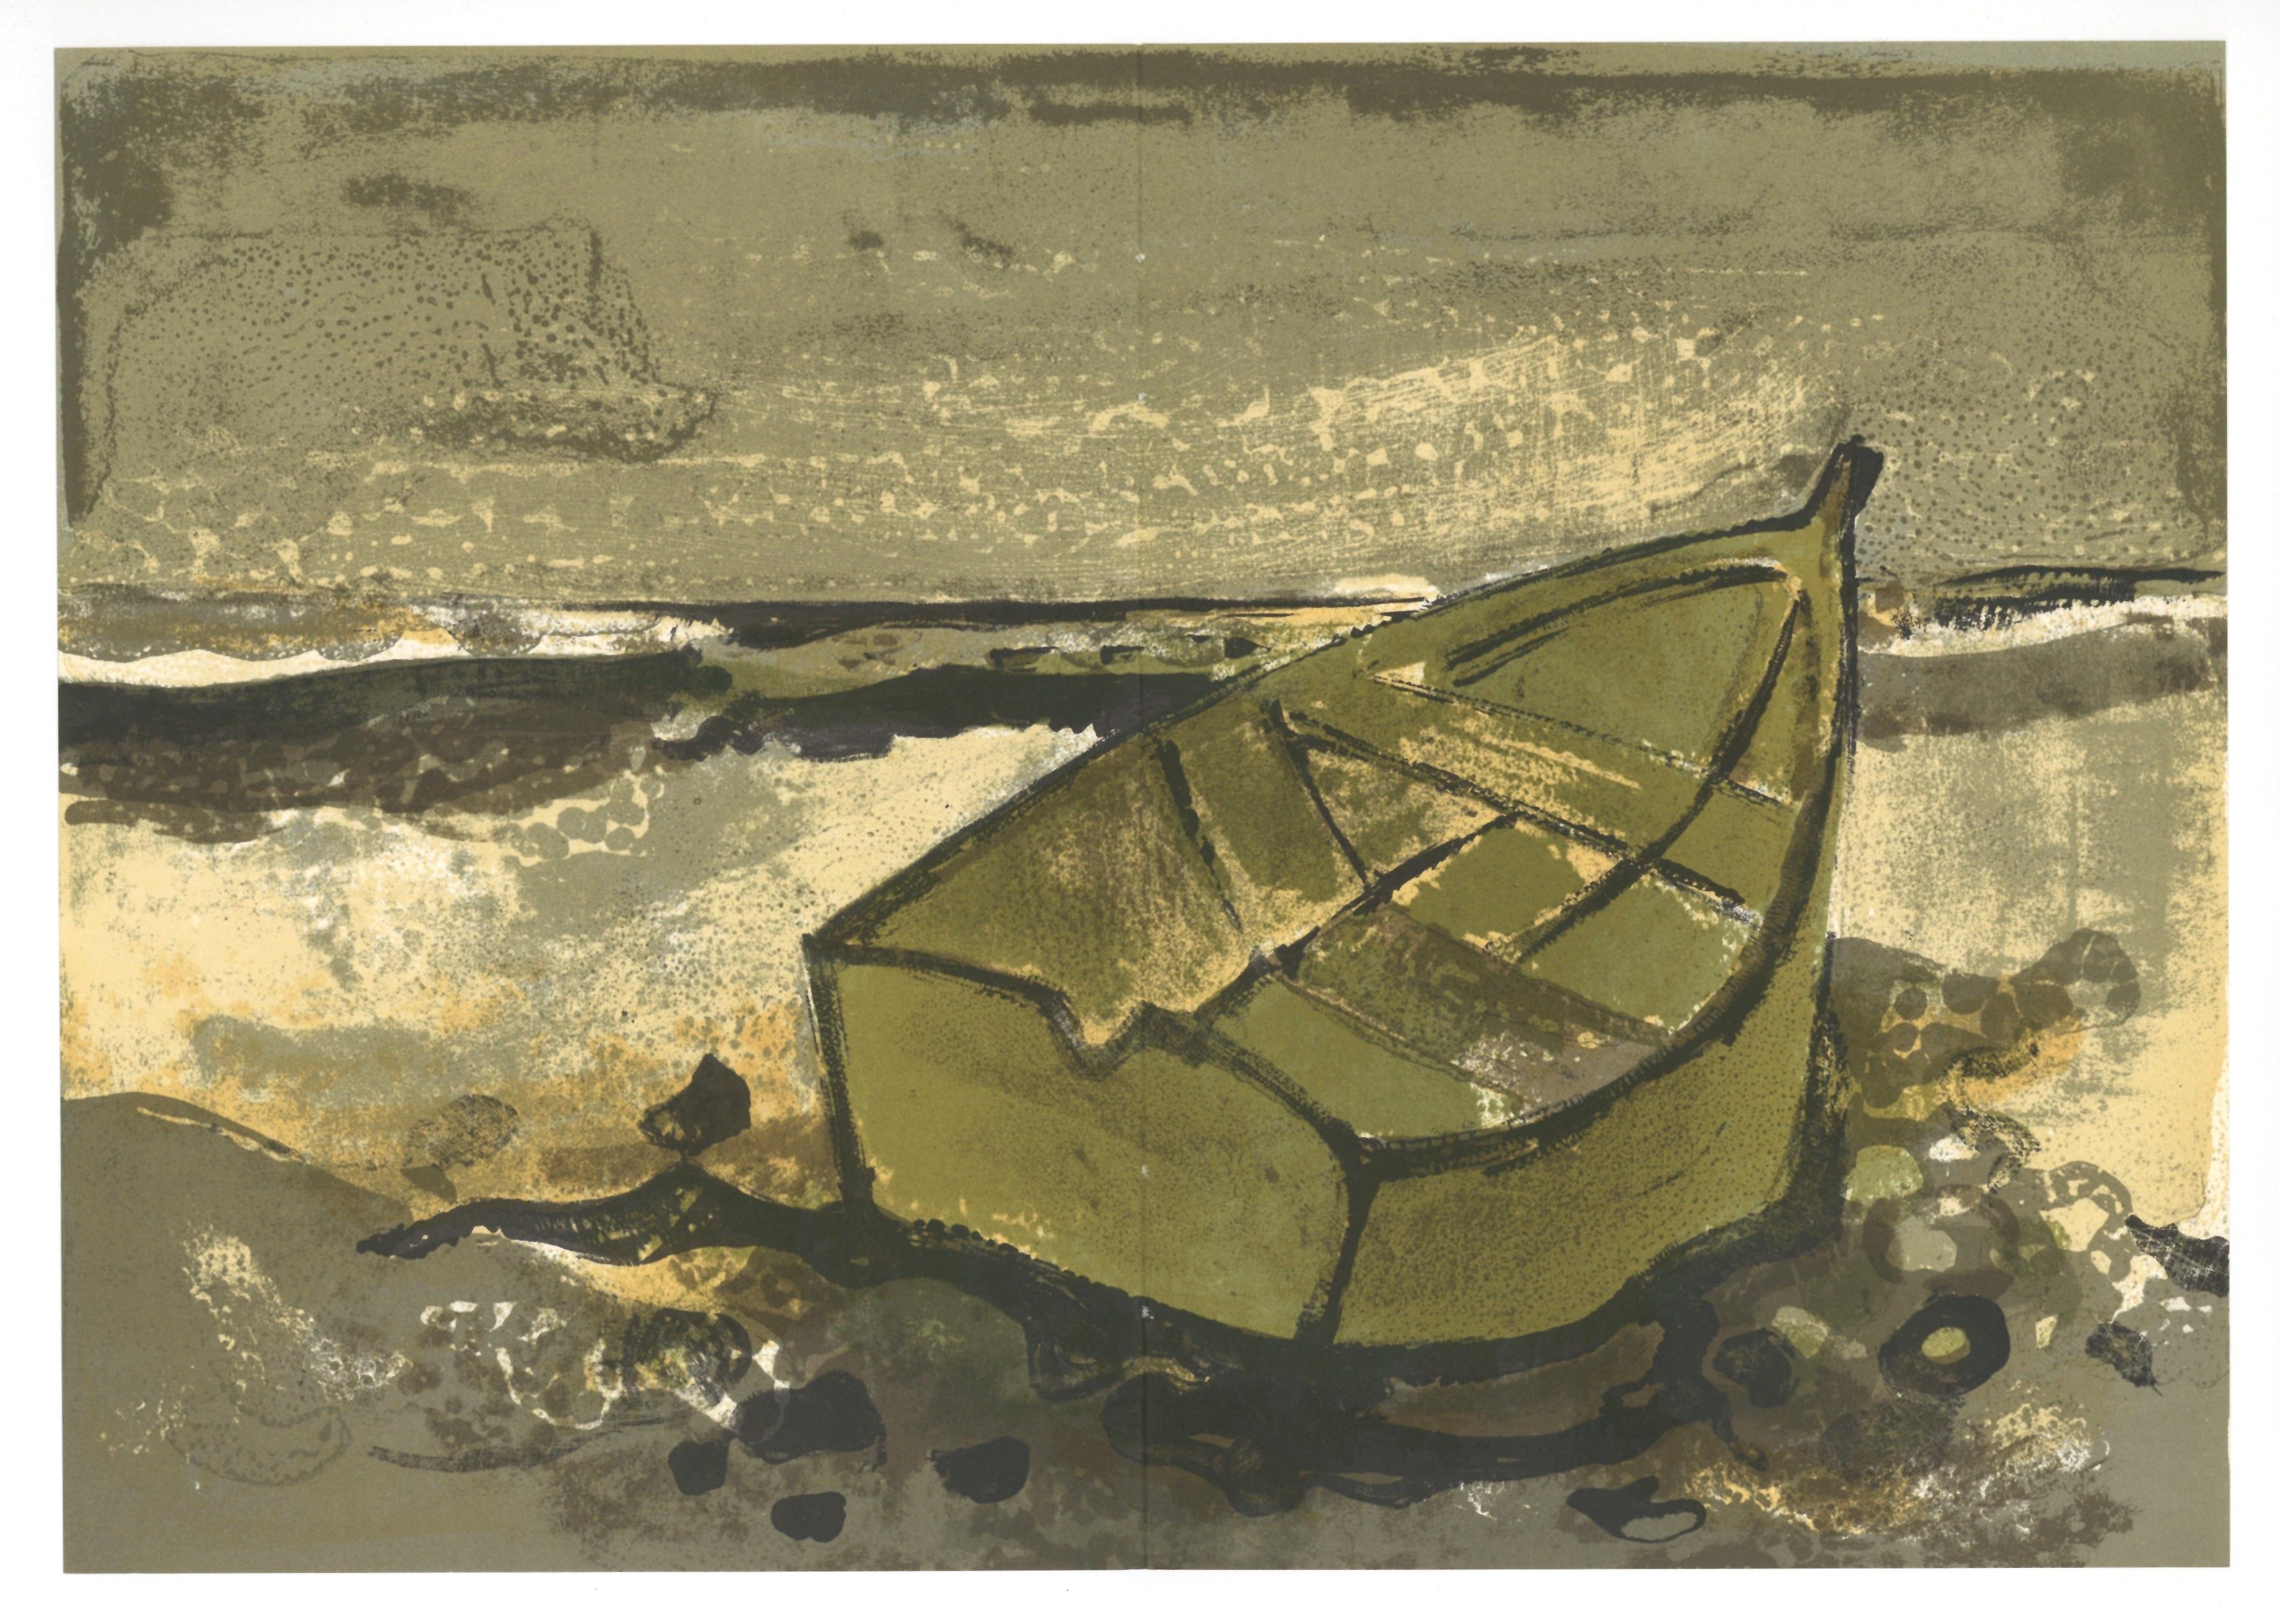 "La barque echouee" original lithograph - Print by André Minaux